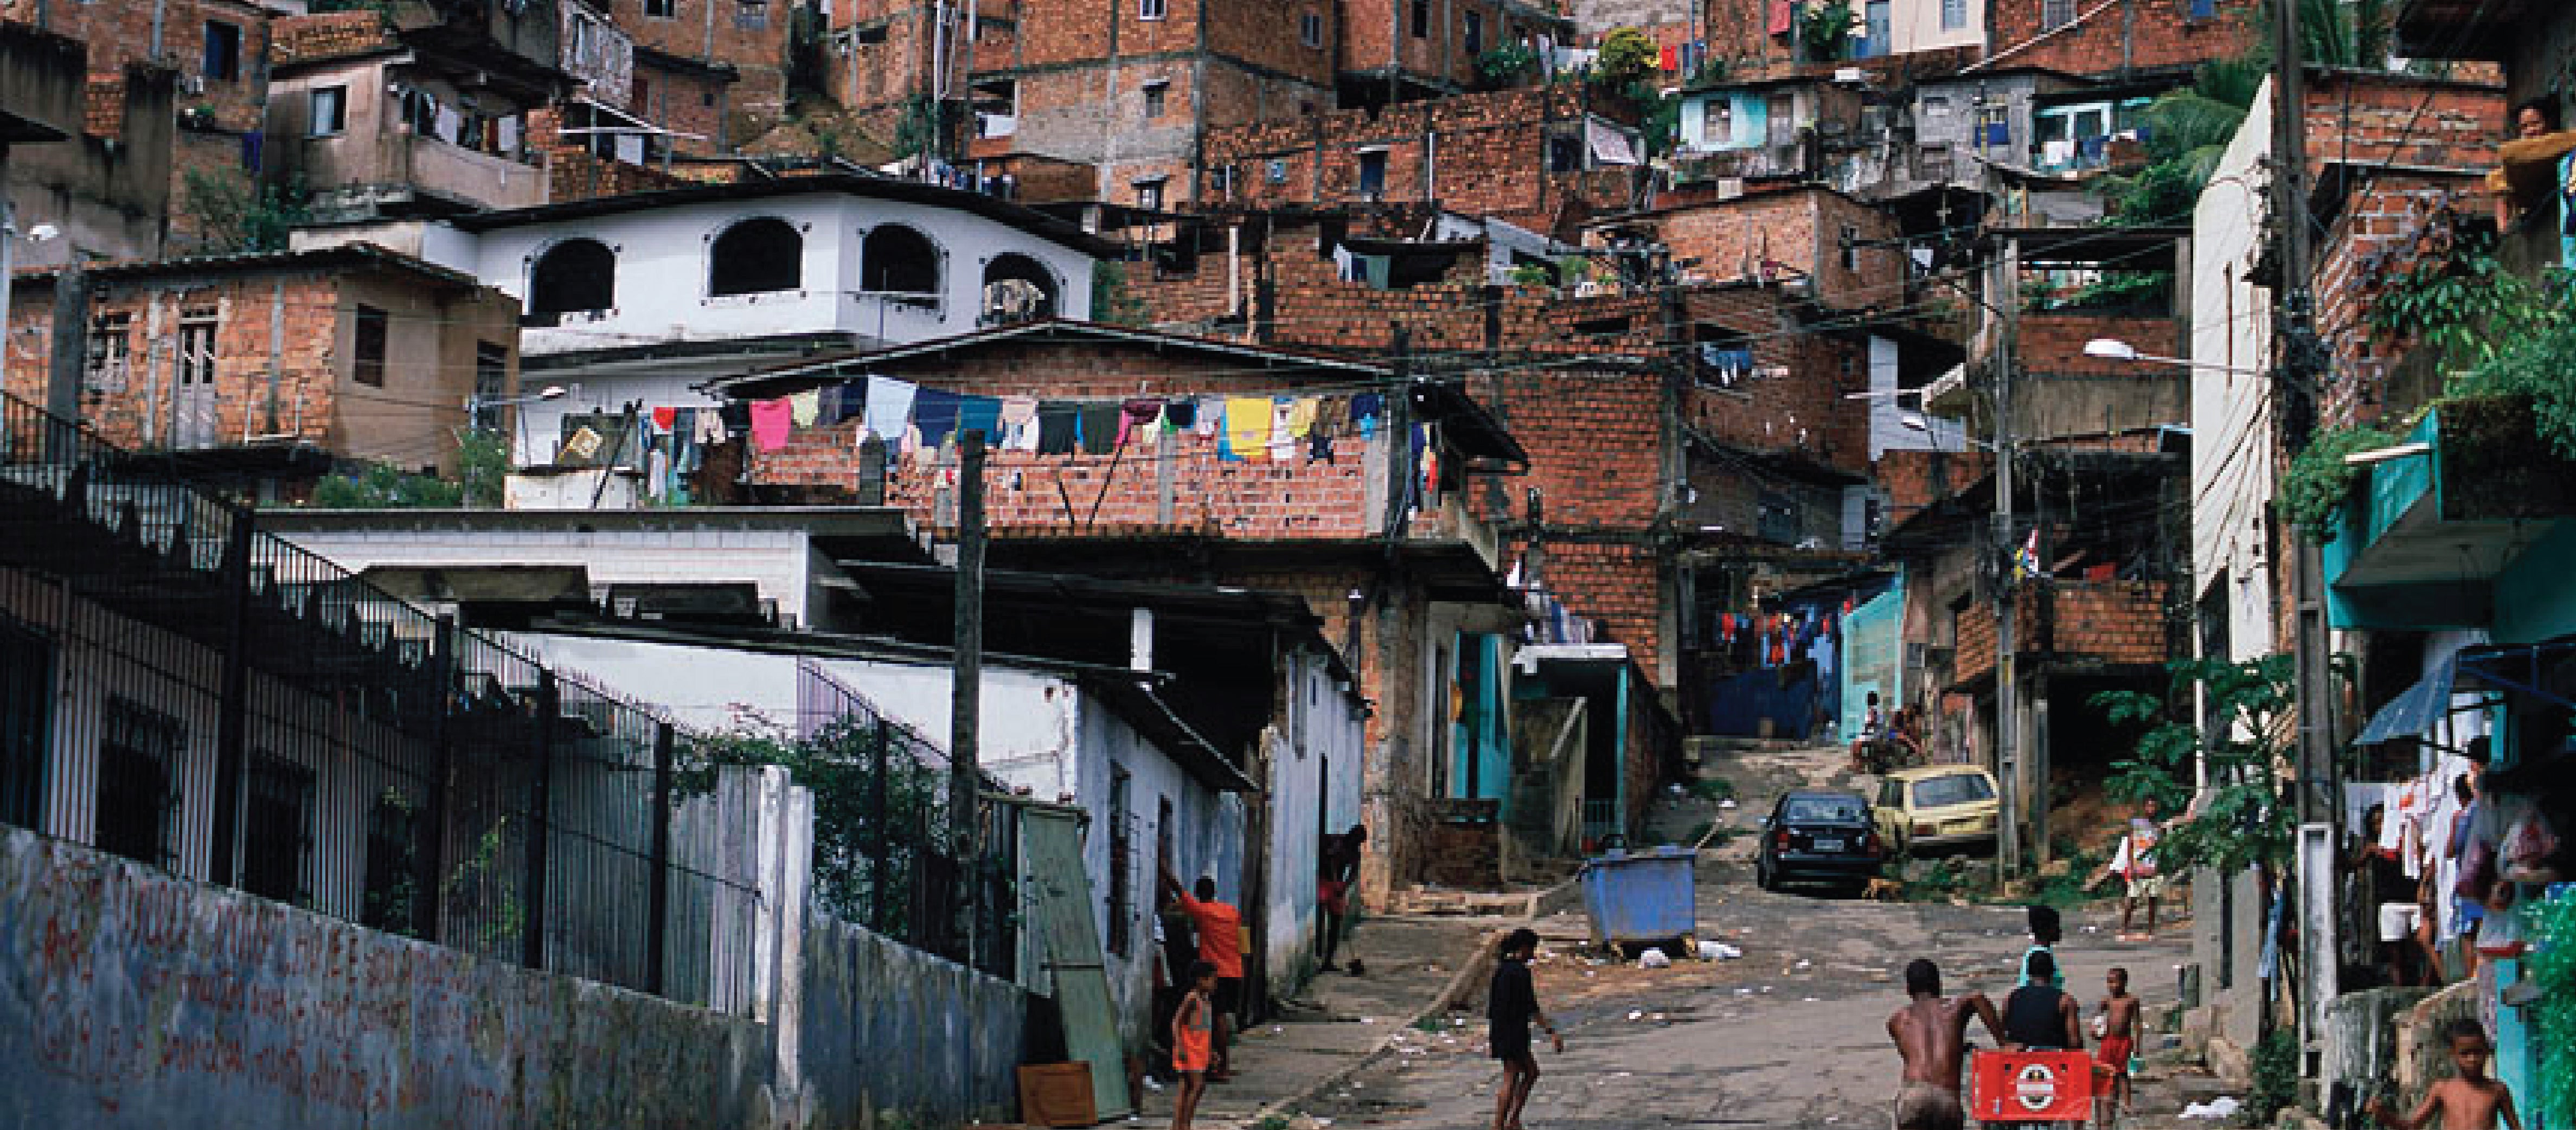 'Favela' in Salvador de Bahia, Brazil